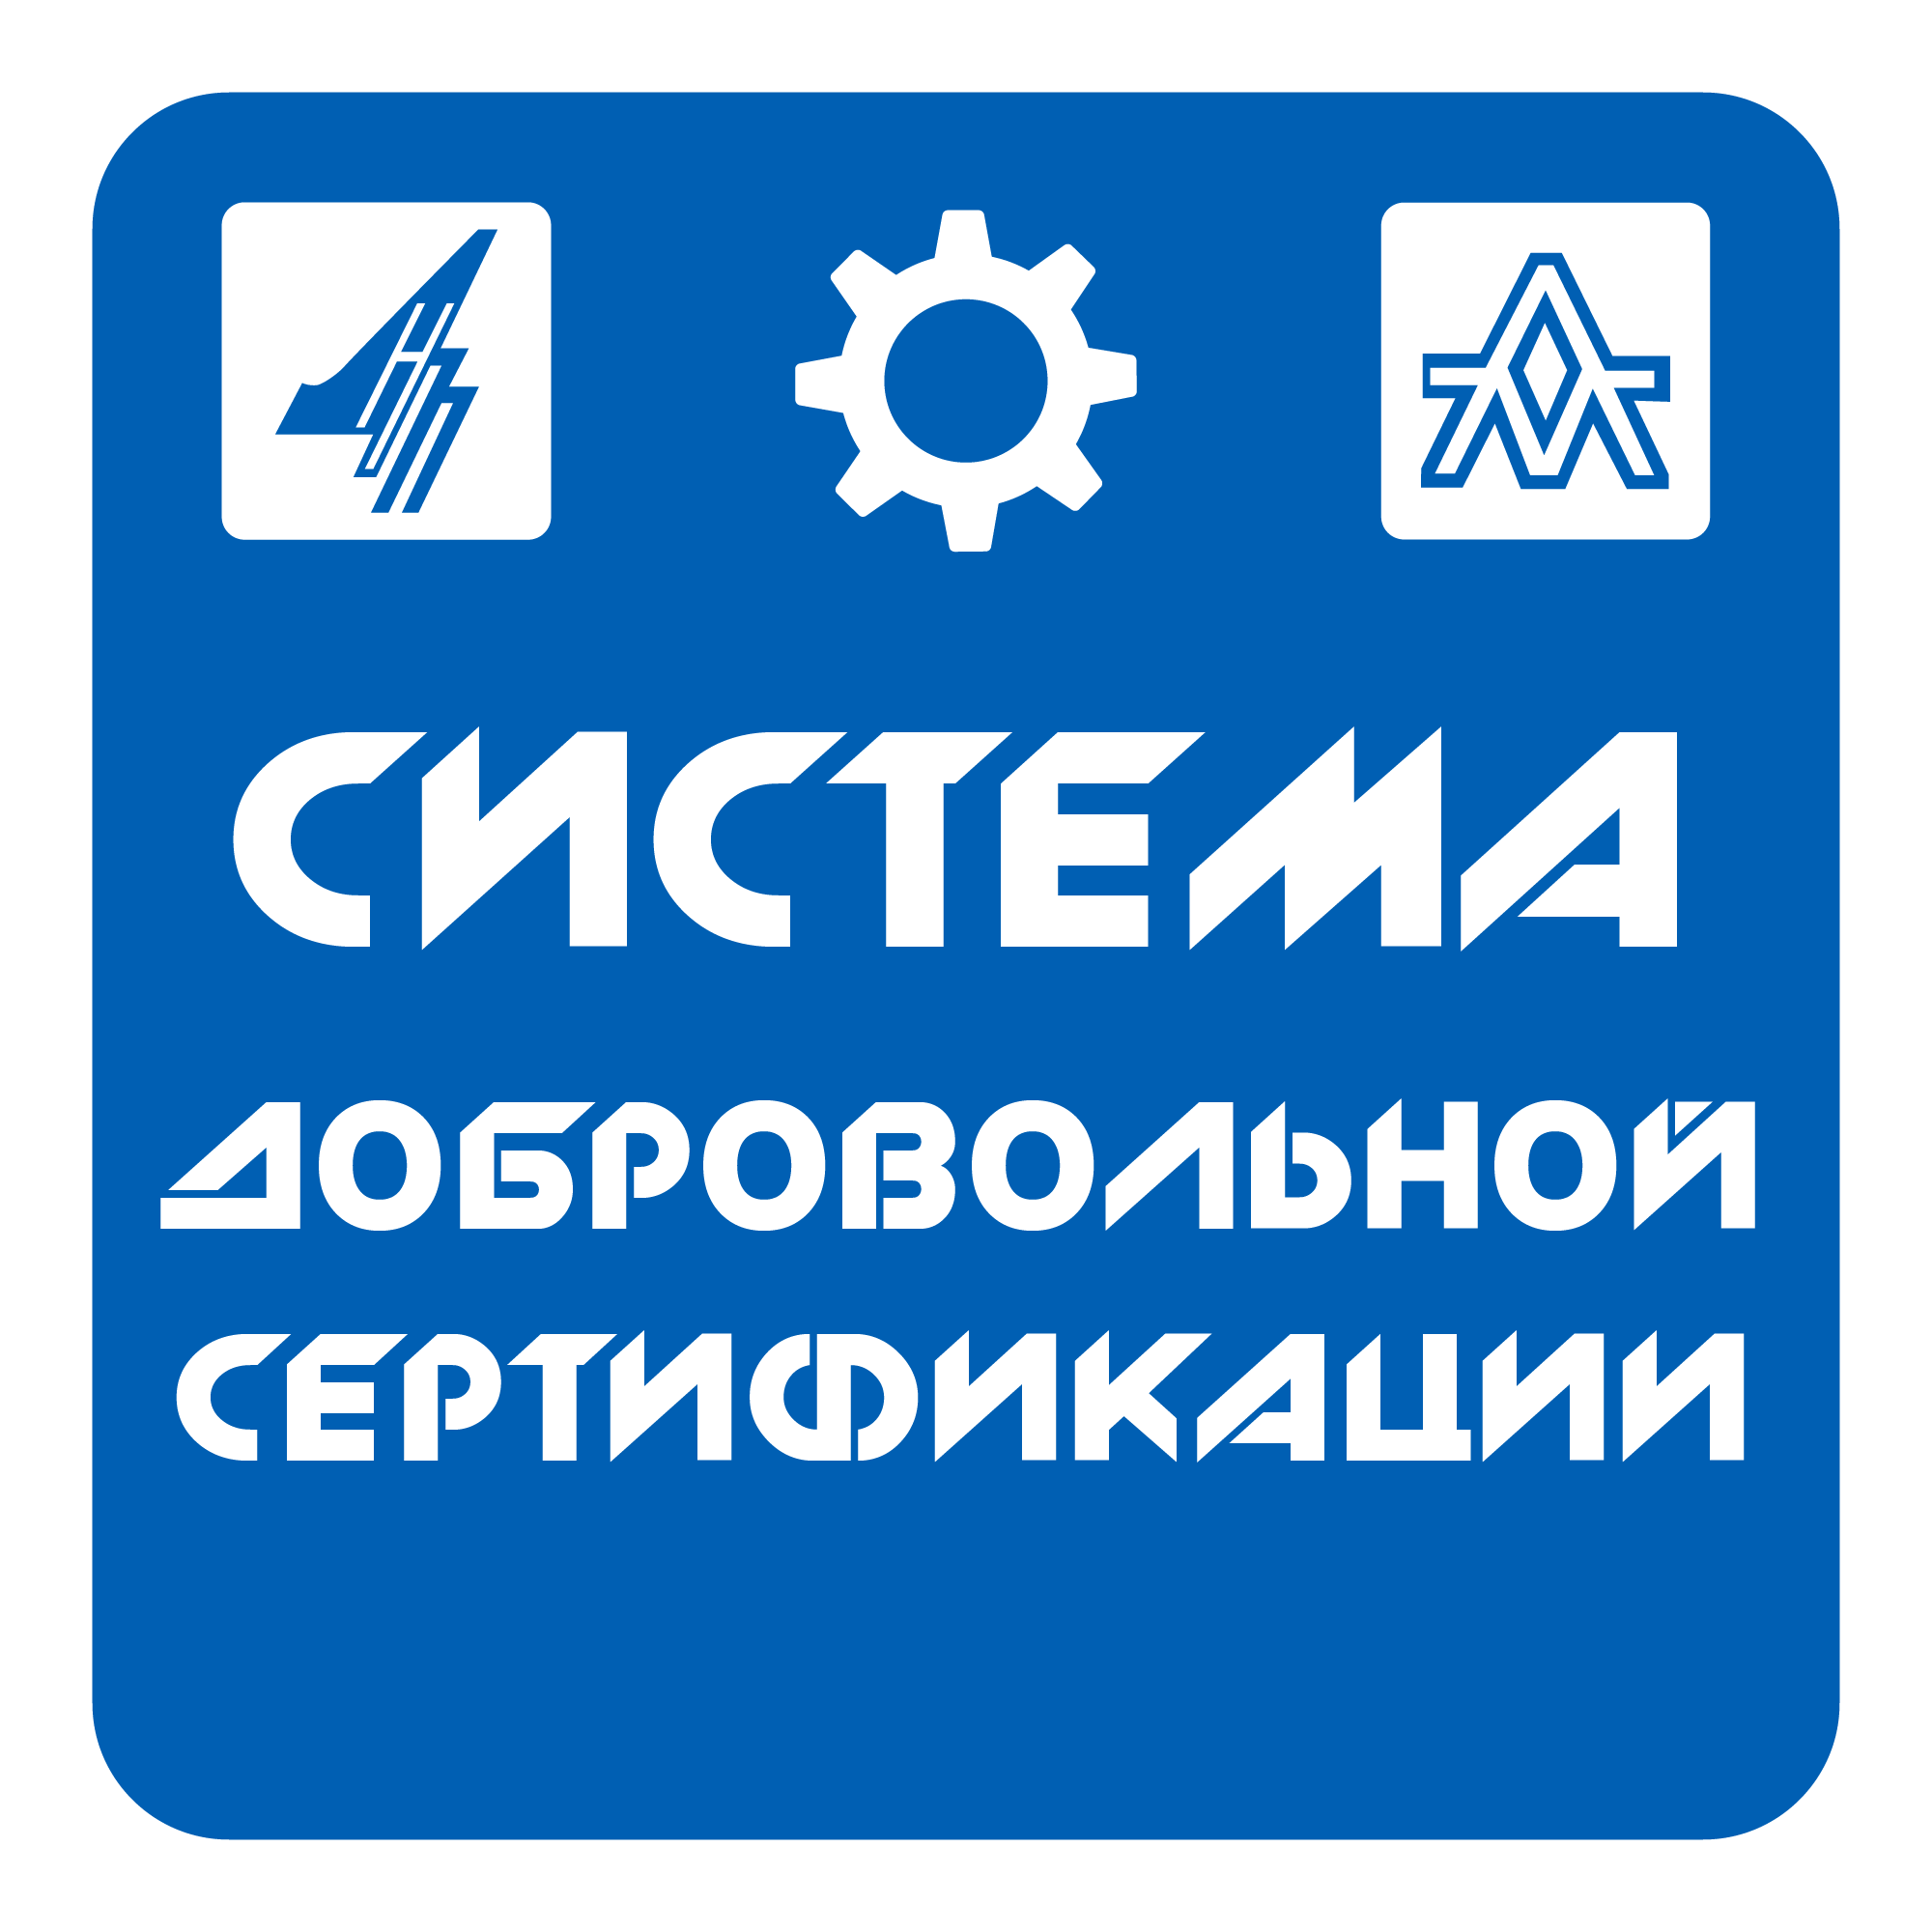 Cert_logo